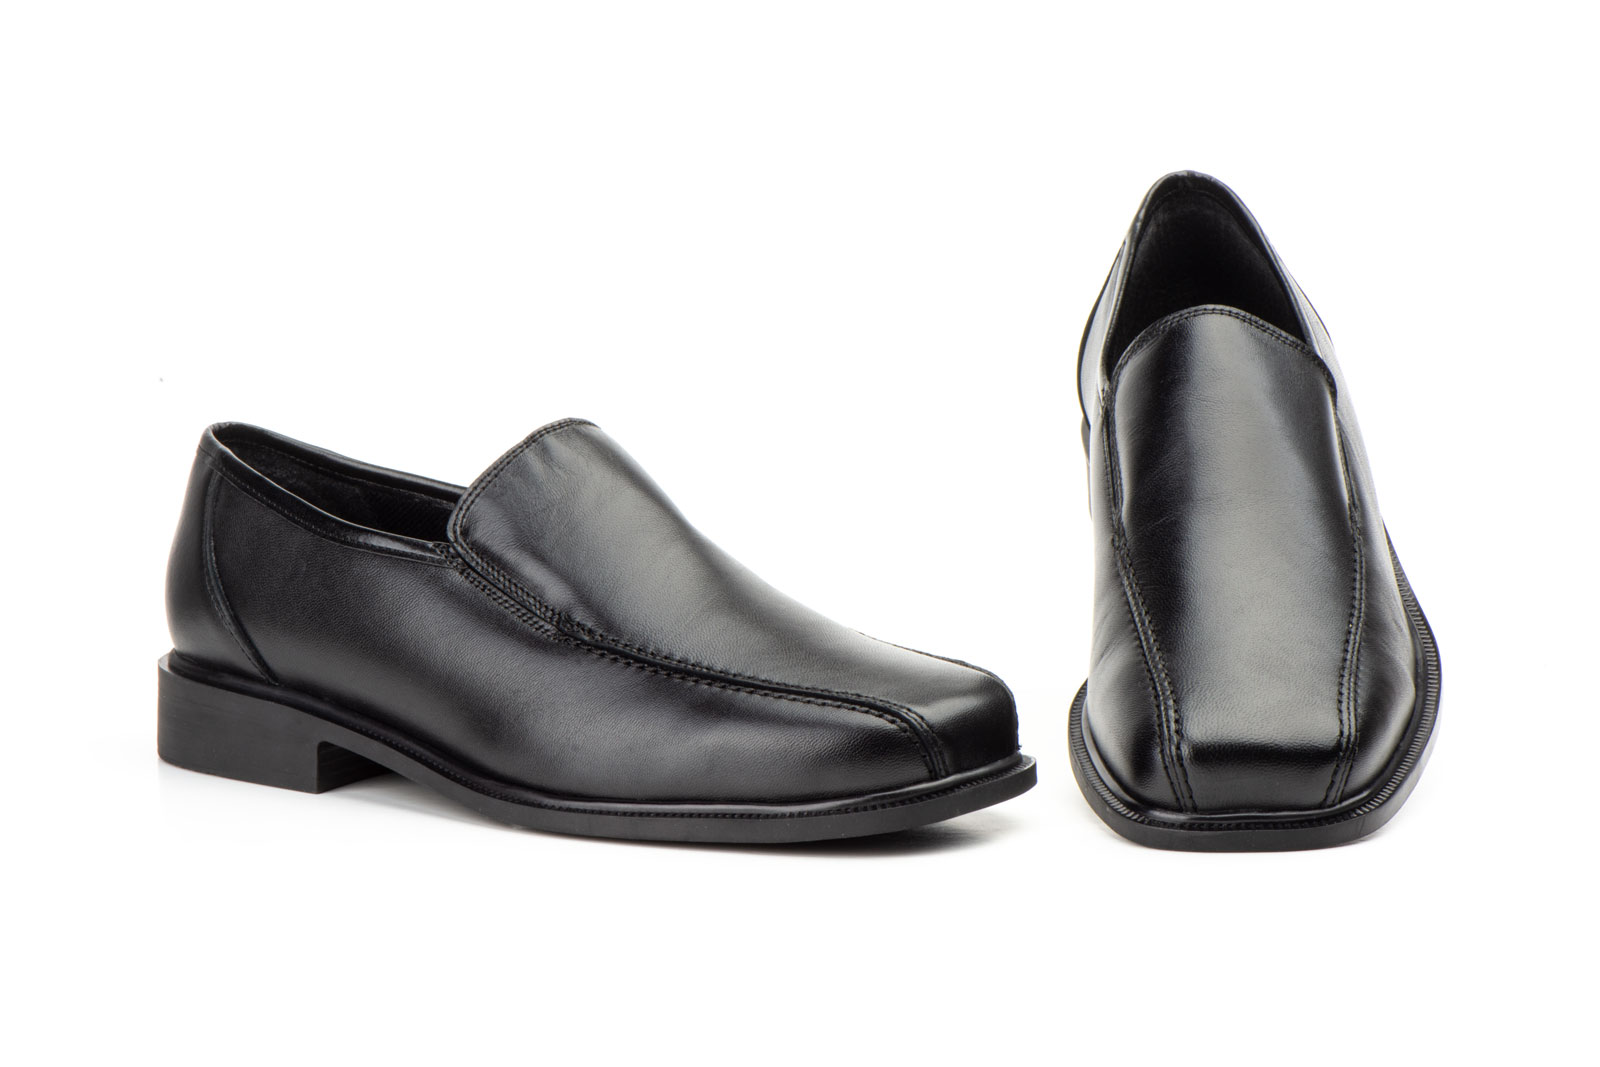 Zapatos Hombre Piel Negro Elásticos  -  Ref. 1216 Negro